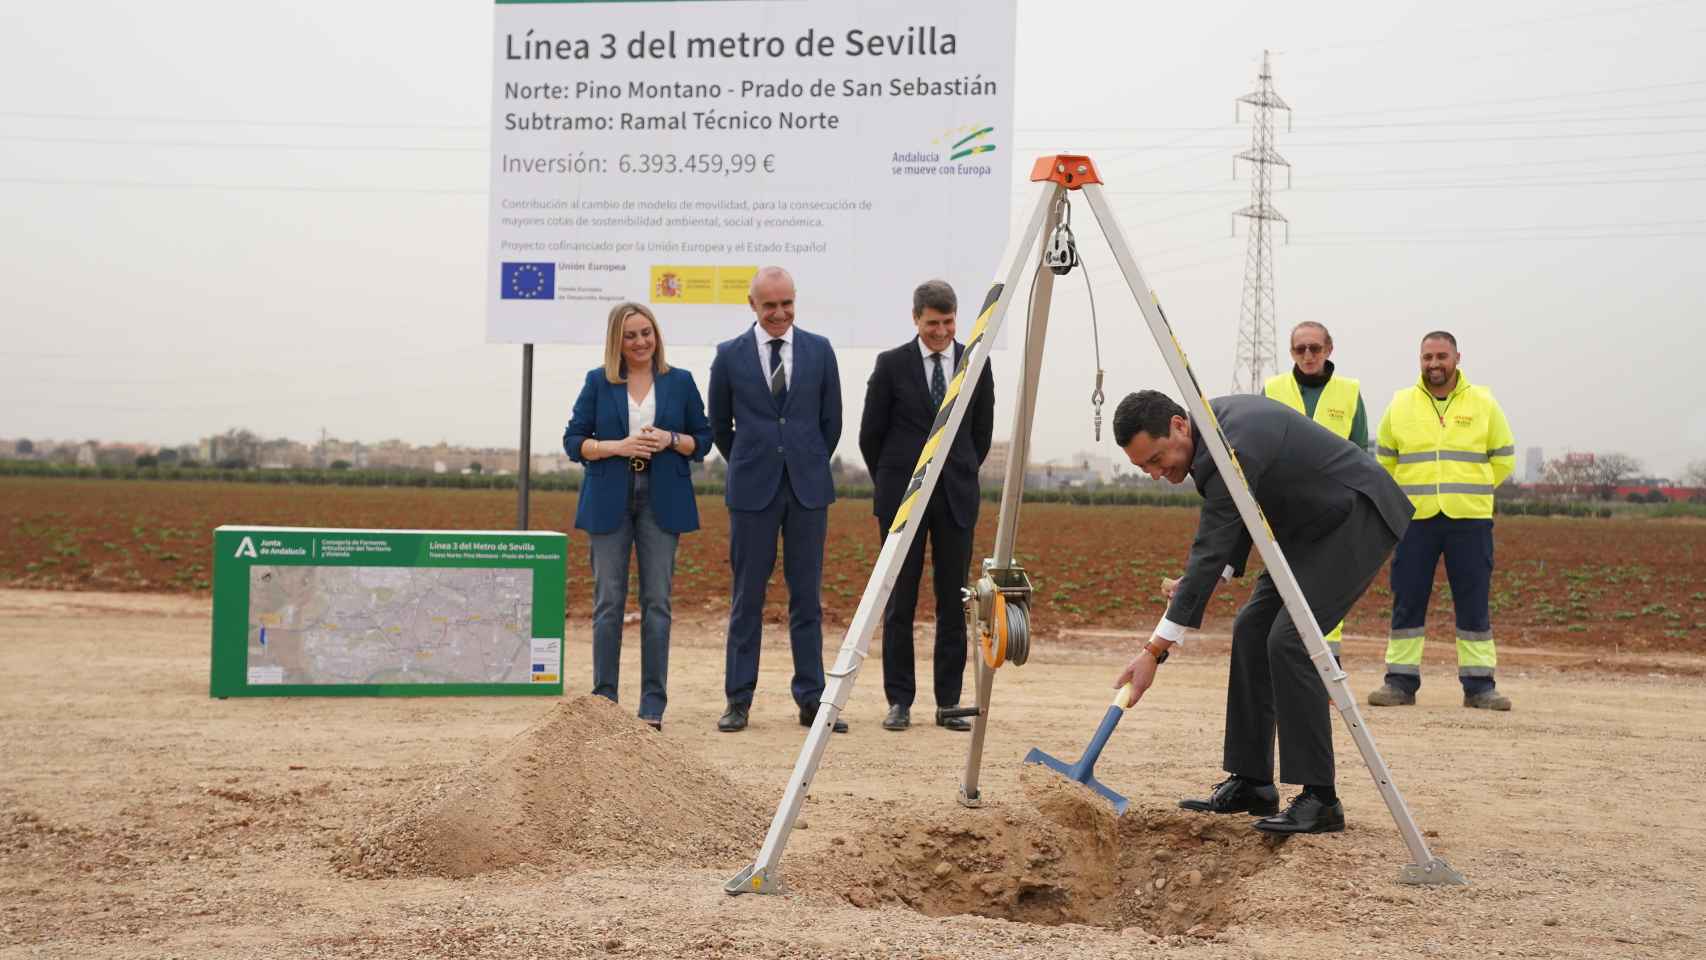 El presidente de la Junta de Andalucía, Juanma Moreno, en la colocación de la primera piedra de la línea 3 del metro de Sevilla.